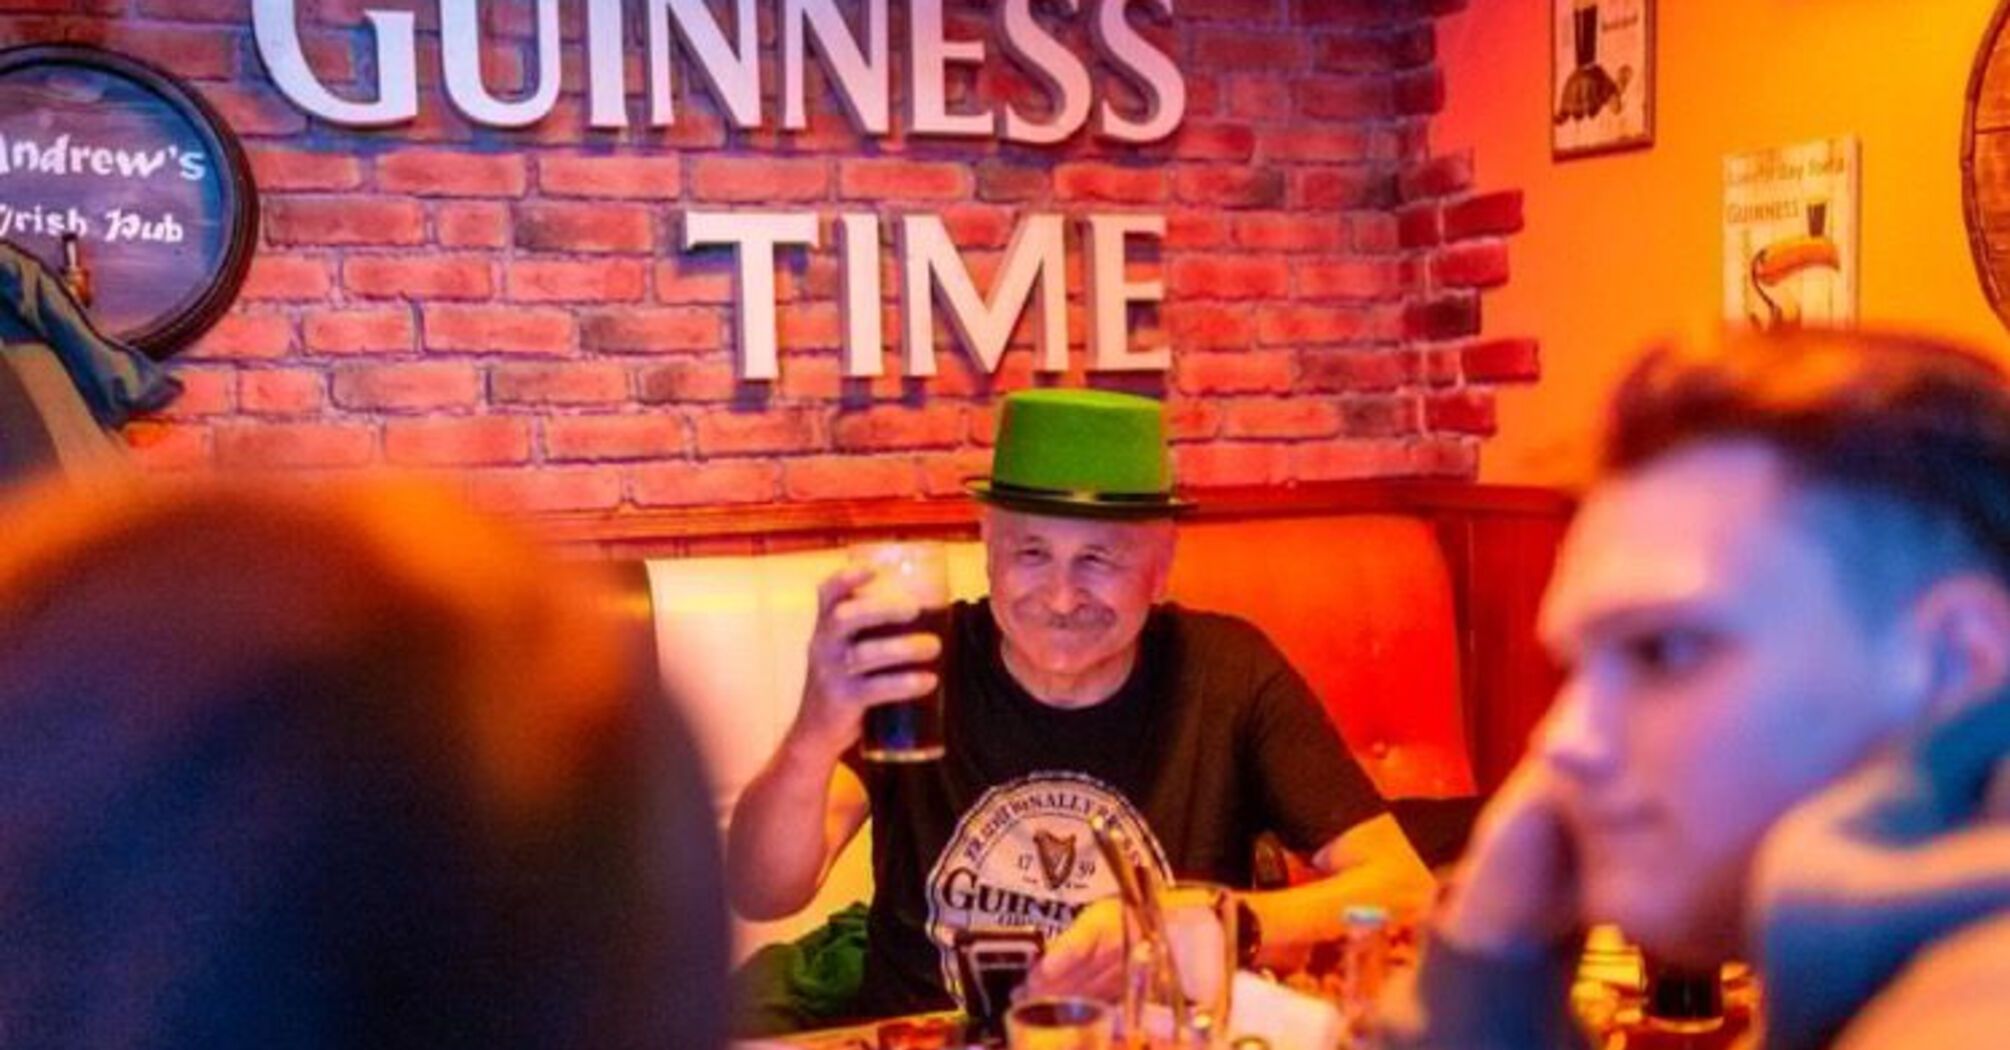 The Irish Pub